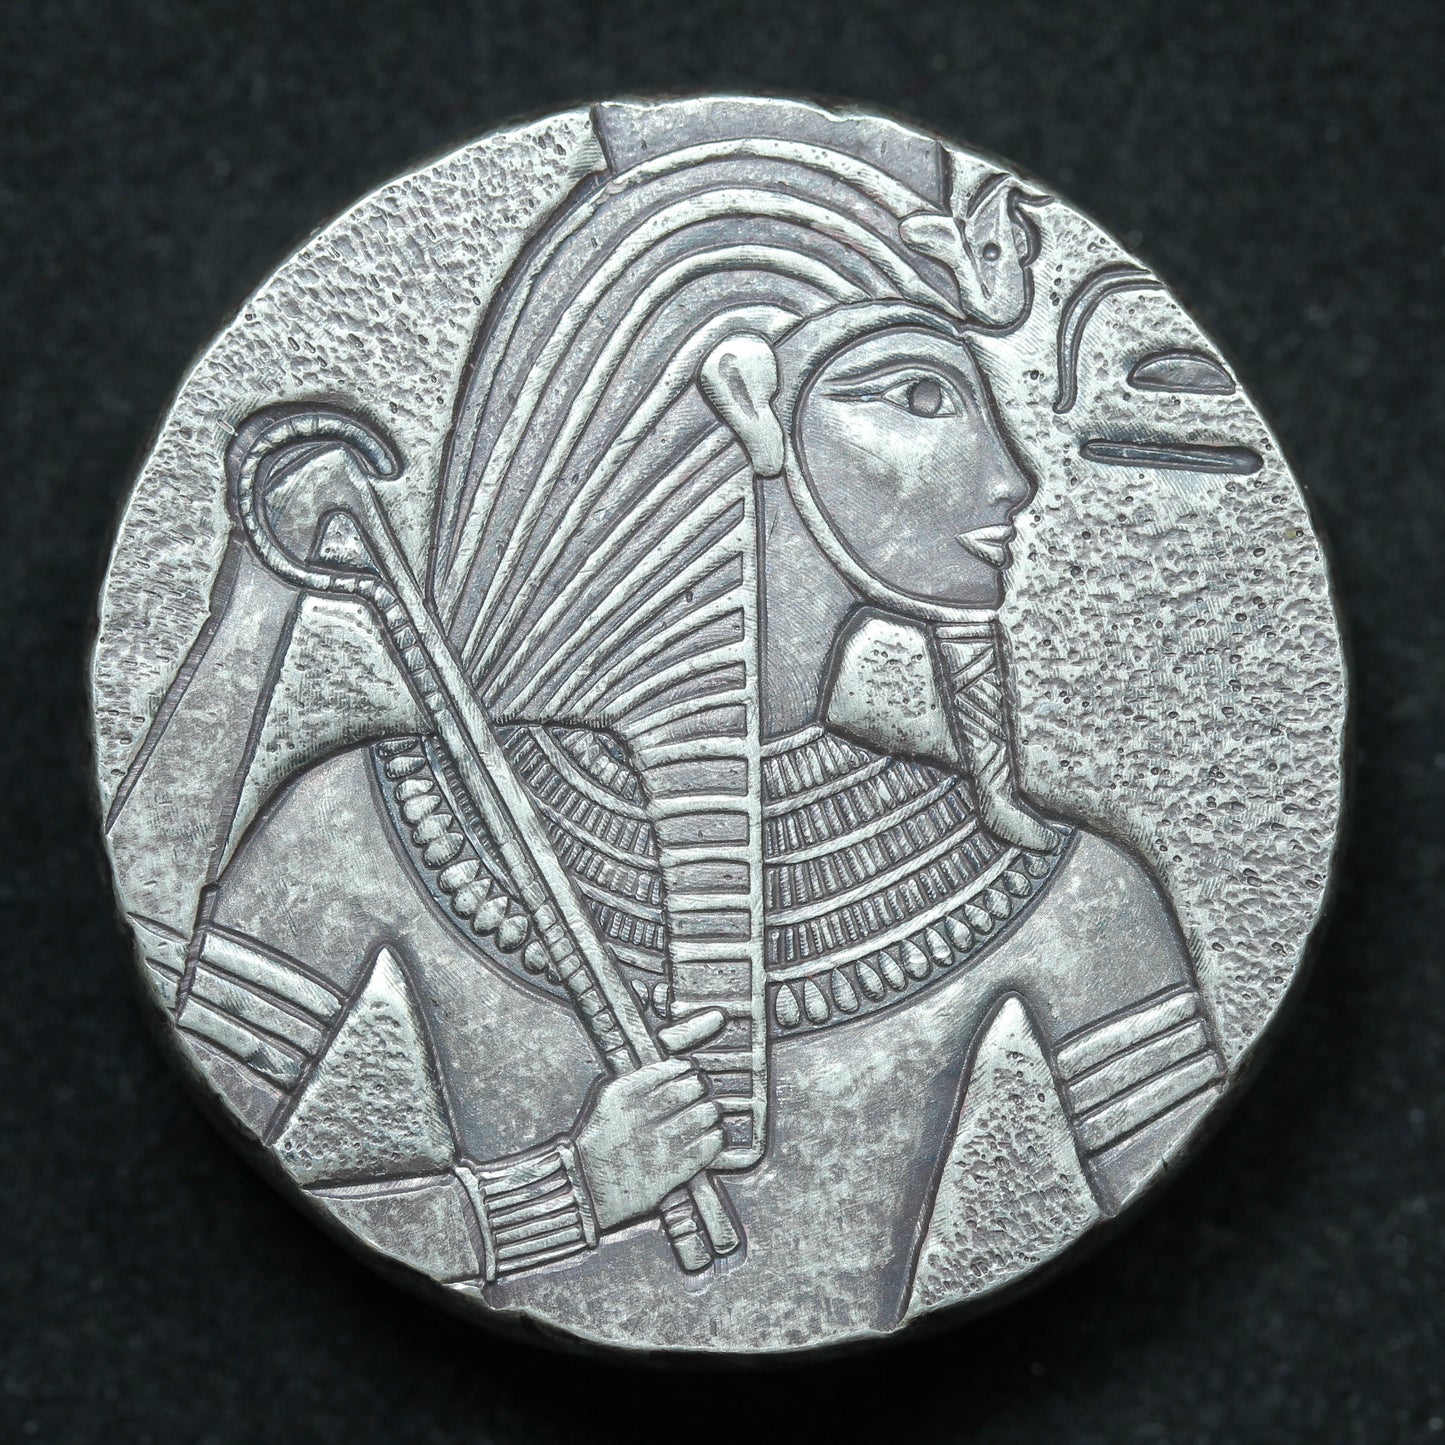 5 oz .999 Fine Silver Round - 2016 King Tut Egyptian Relic Series - Scottsdale